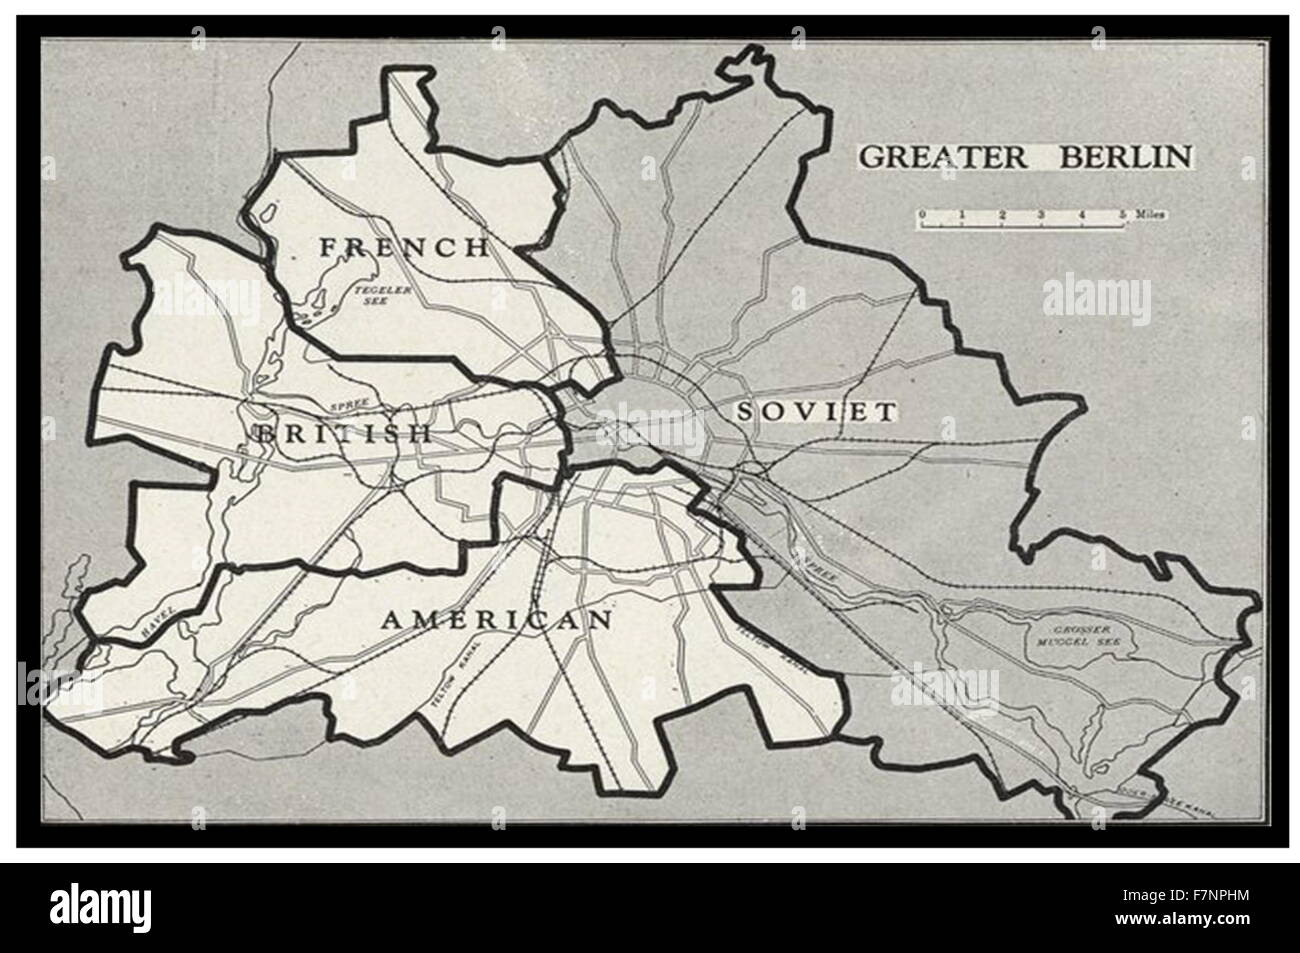 Berlin-Blockade-Karte 1948. er Berlin-Blockade (1. April 1948-12. Mai 1949) war einer der ersten großen internationalen Krisen des Kalten Krieges. Während der multinationalen Besetzung des Post-World War II Deutschland blockiert die Sowjetunion den Westalliierten Eisenbahn-, Straßen- und Kanal Zugriff auf die Sektoren Berlins im westlichen Griff. Stockfoto